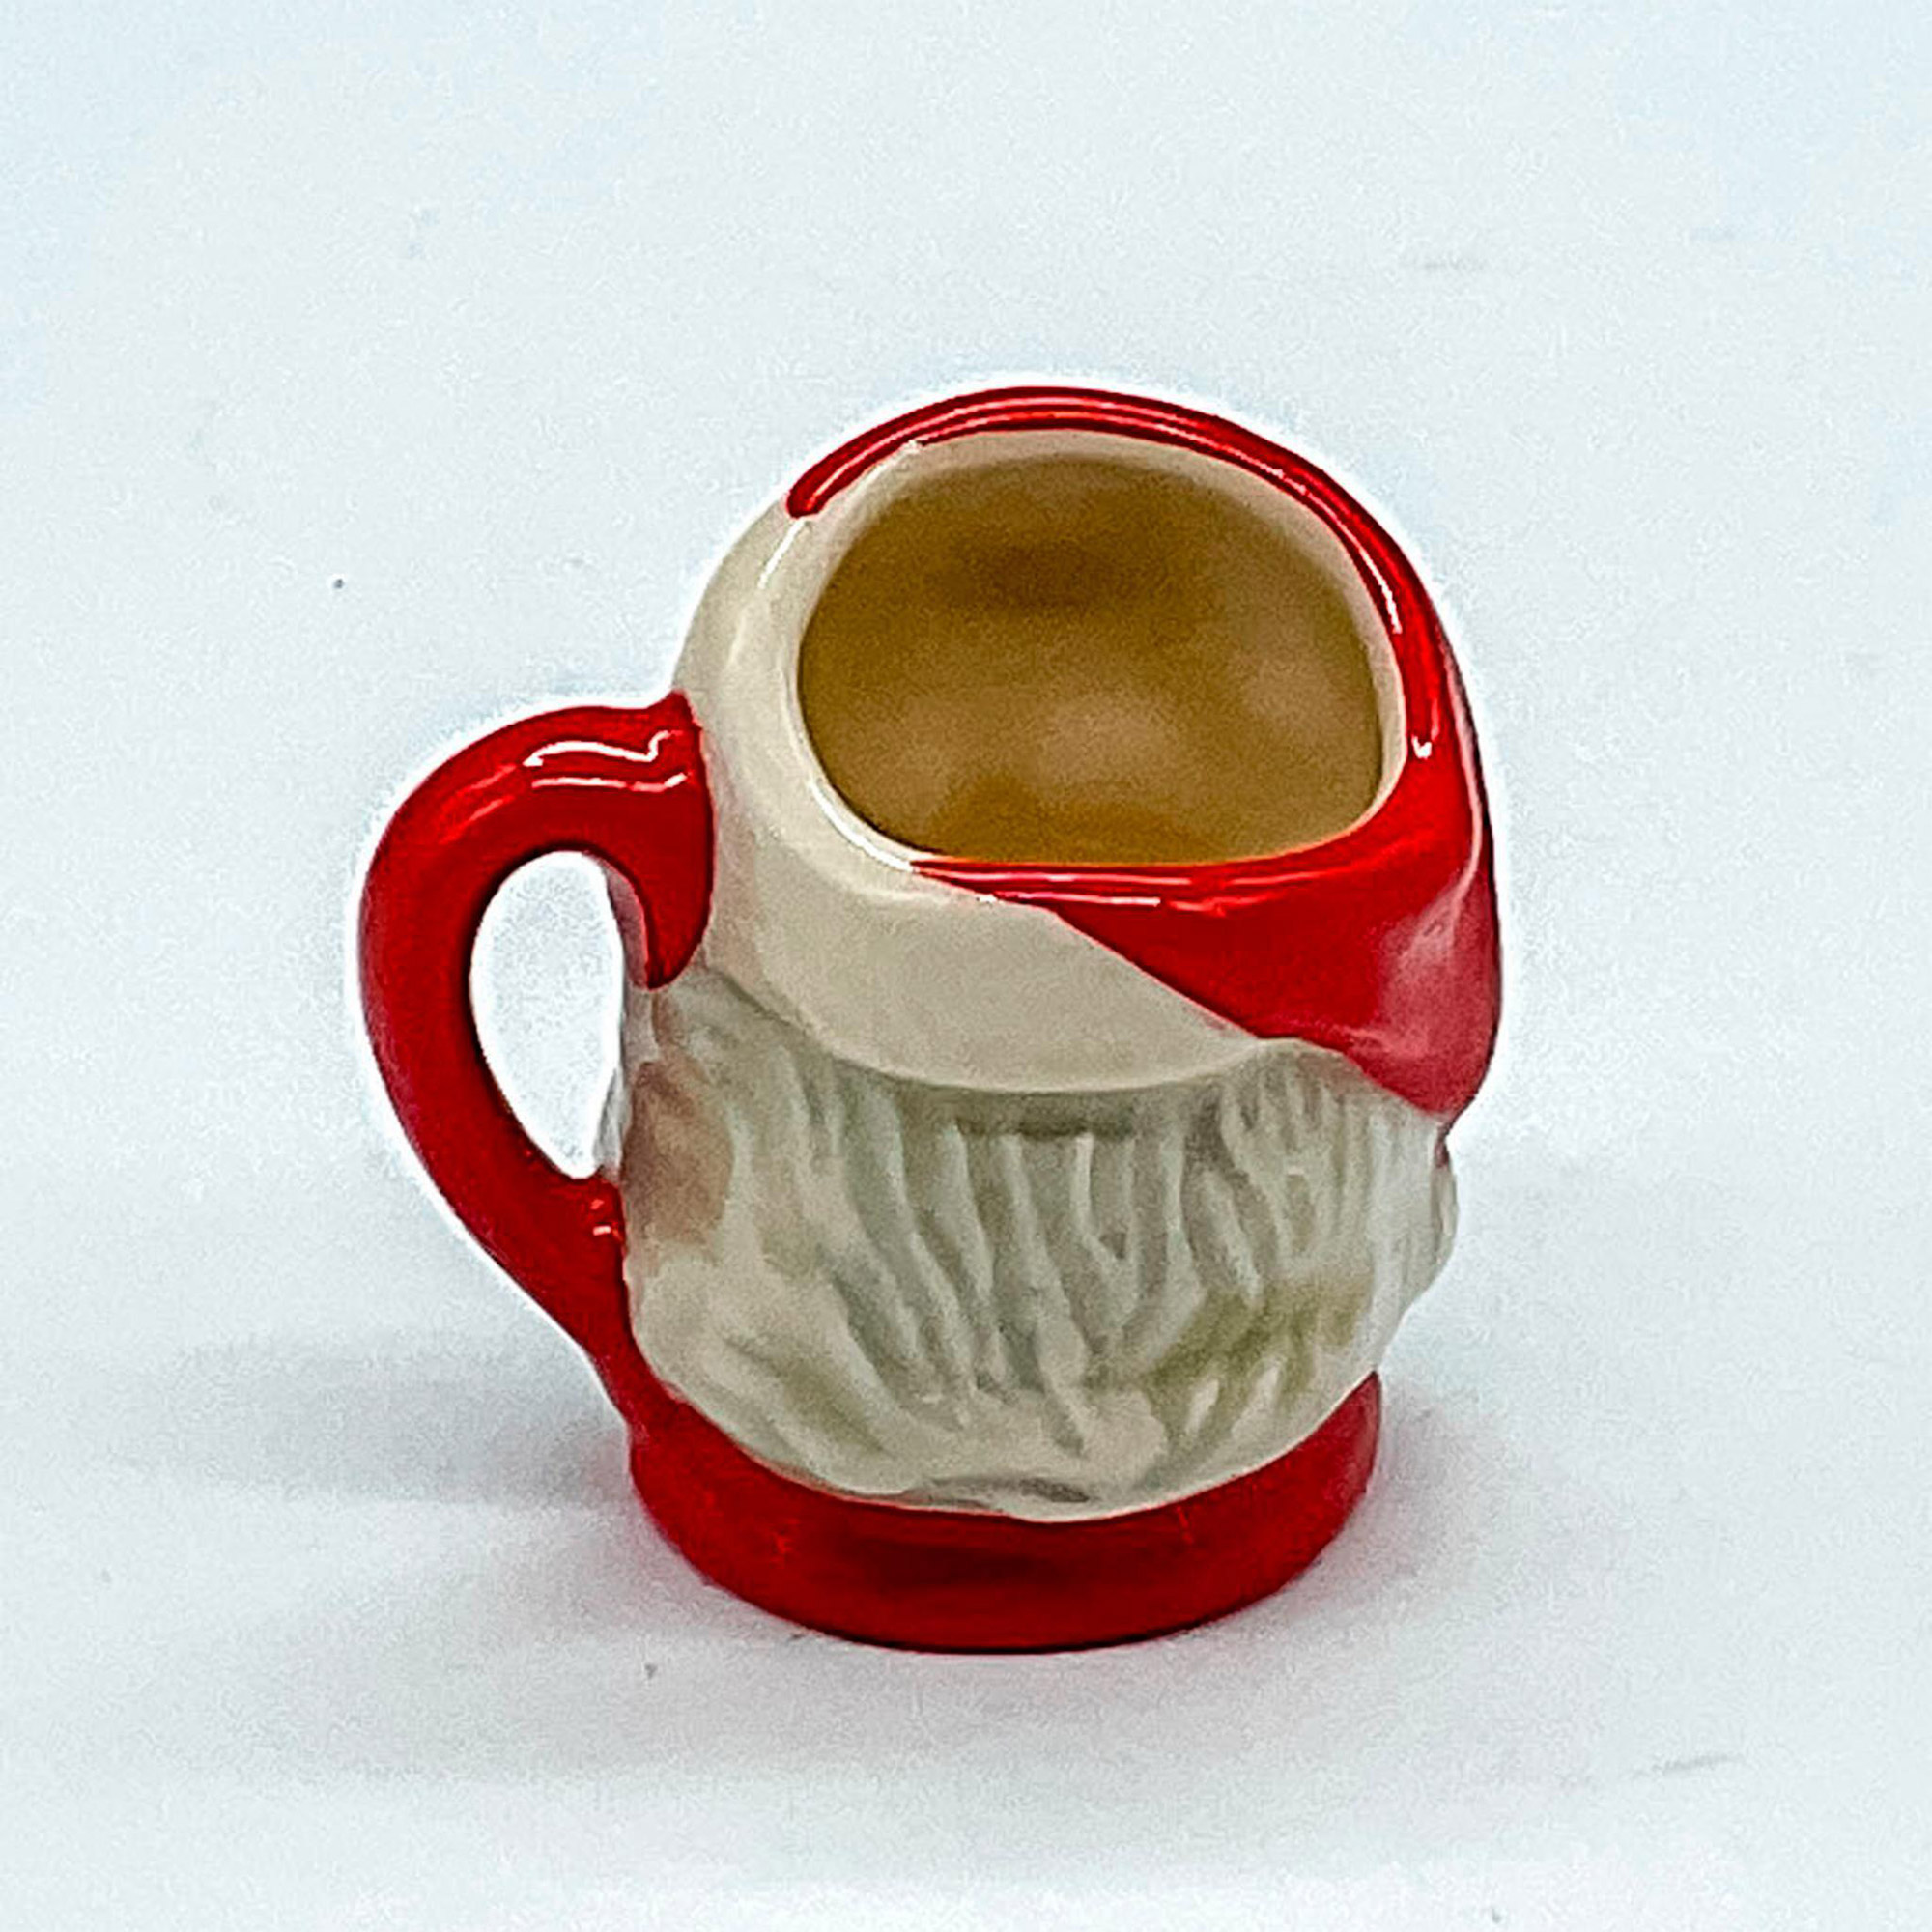 Santa Claus D6950 (Red Handle) - Tiny - Royal Doulton Character Jug - Image 2 of 3